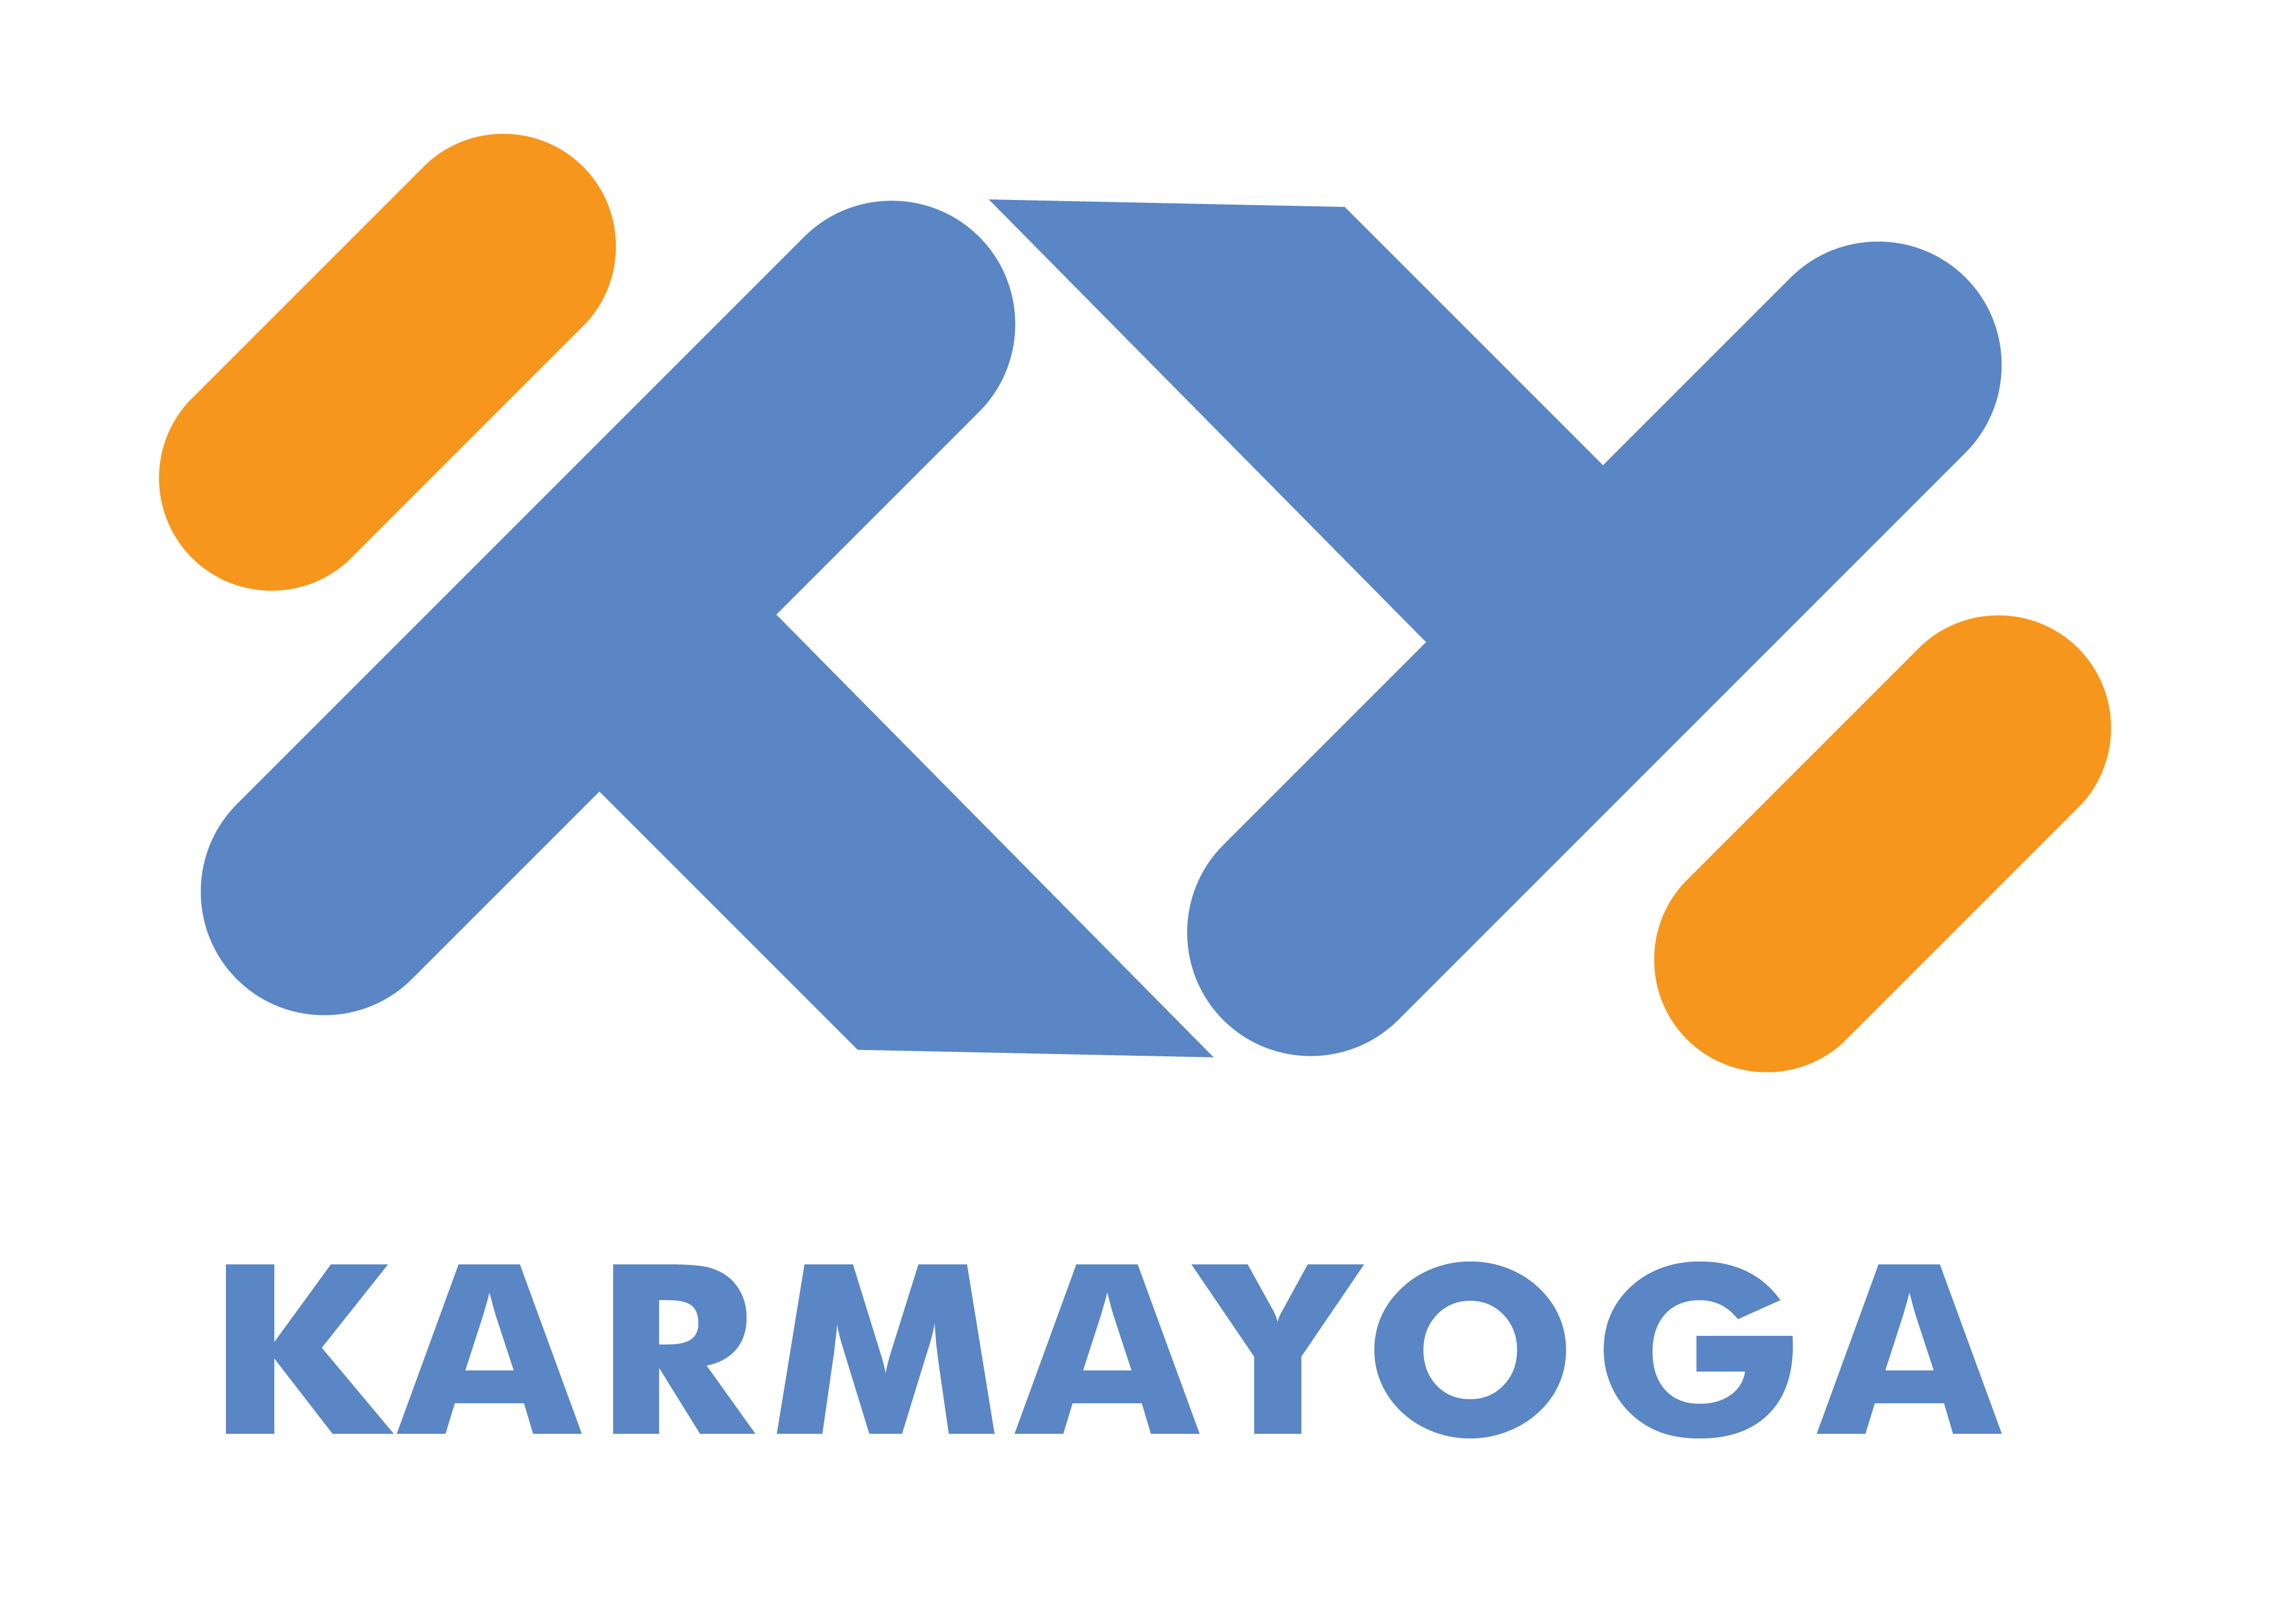 Karmayoga